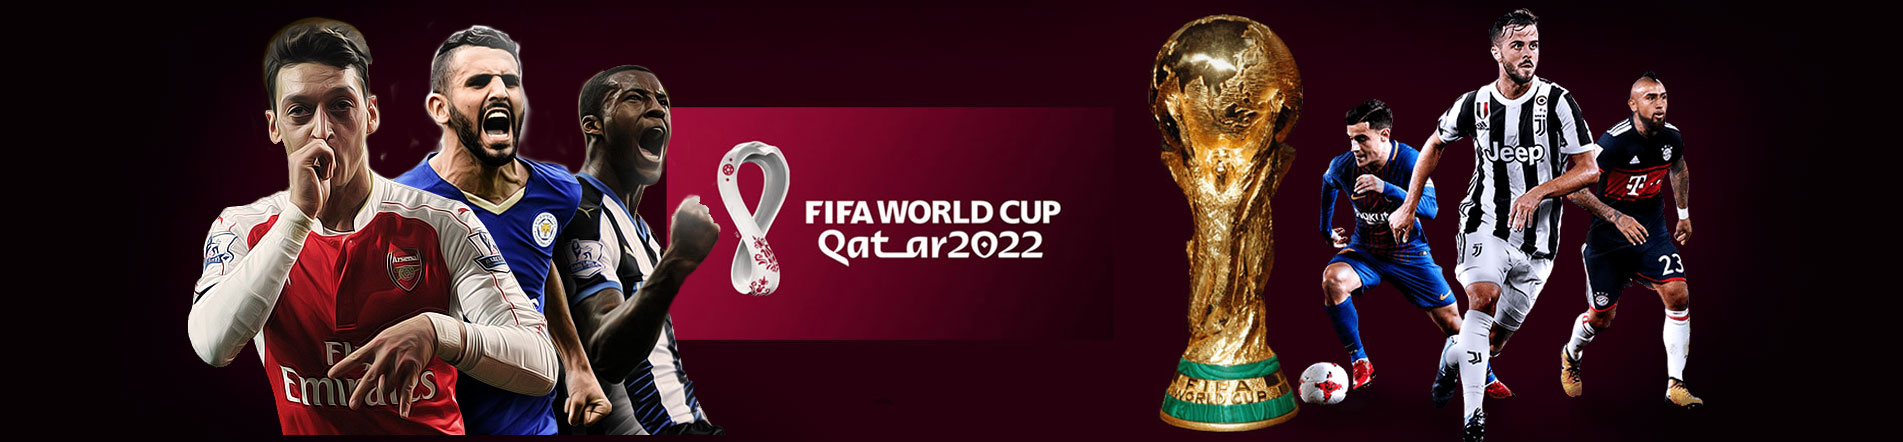 ตารางคะแนน ฟุตบอลโลก รอบคัดเลือก โซนยุโรป 2022